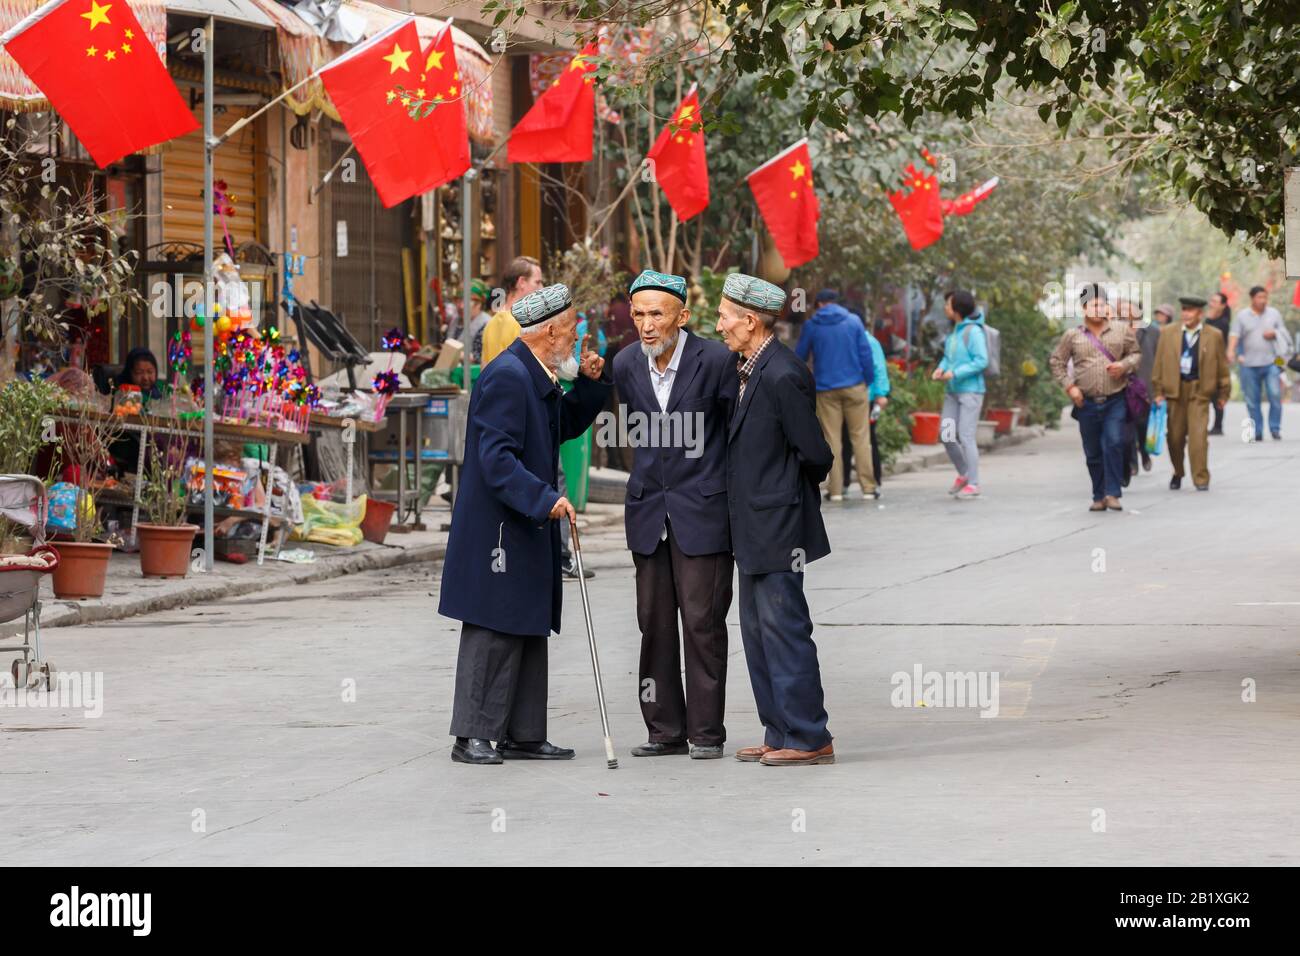 Tre anziani della minoranza Uyghur hanno una conversazione in una strada nella città vecchia di Kashgar. Le bandiere cinesi sono montate sulla casa nella parte posteriore. Foto Stock